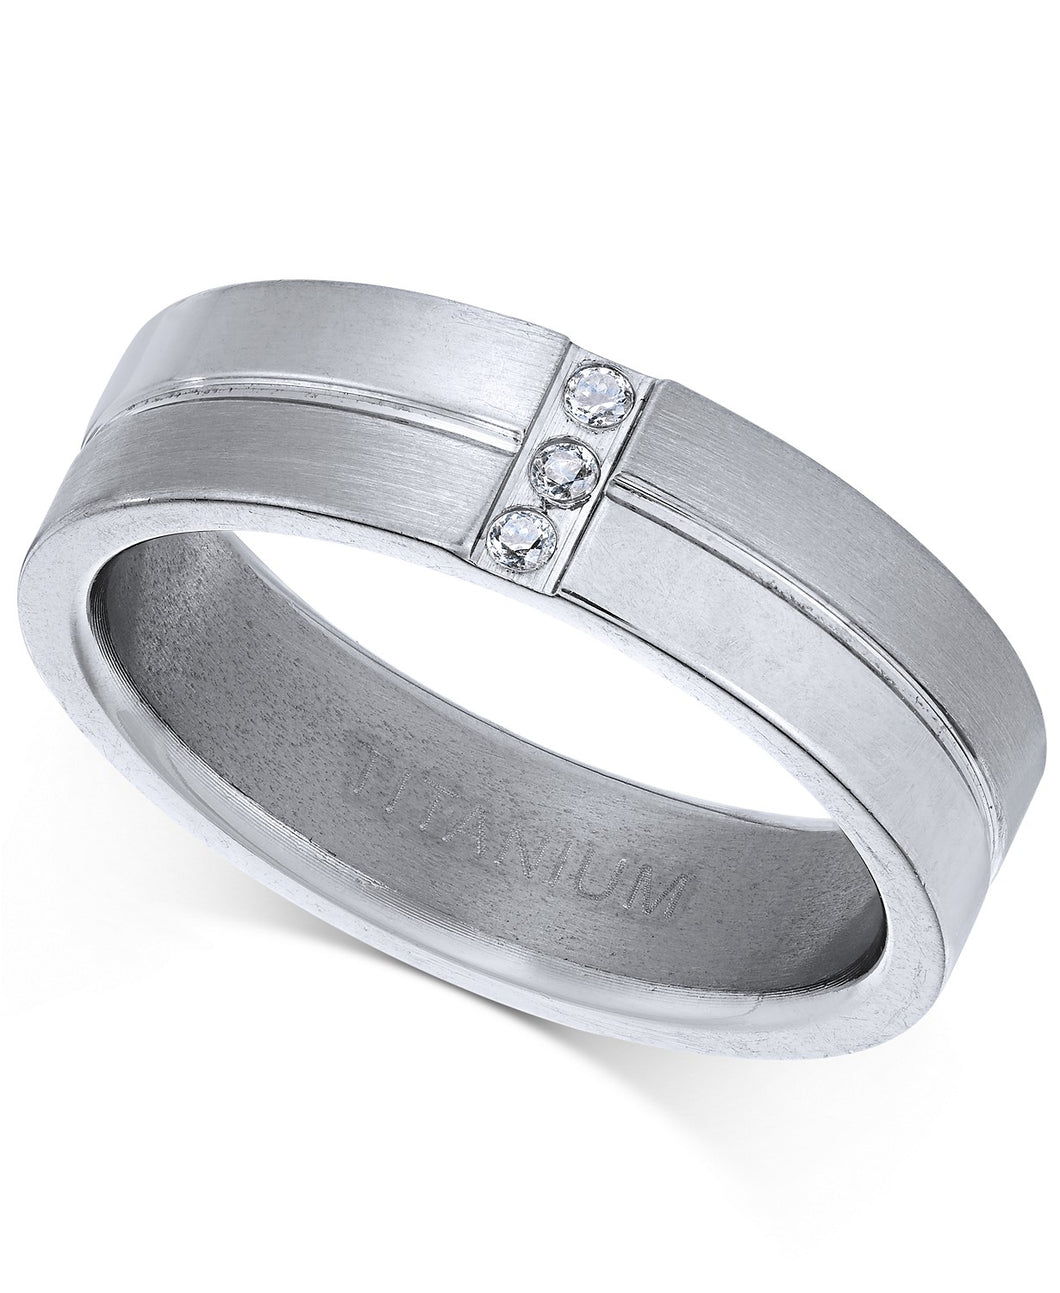 Men's Titanium Cubic Zirconia Ring